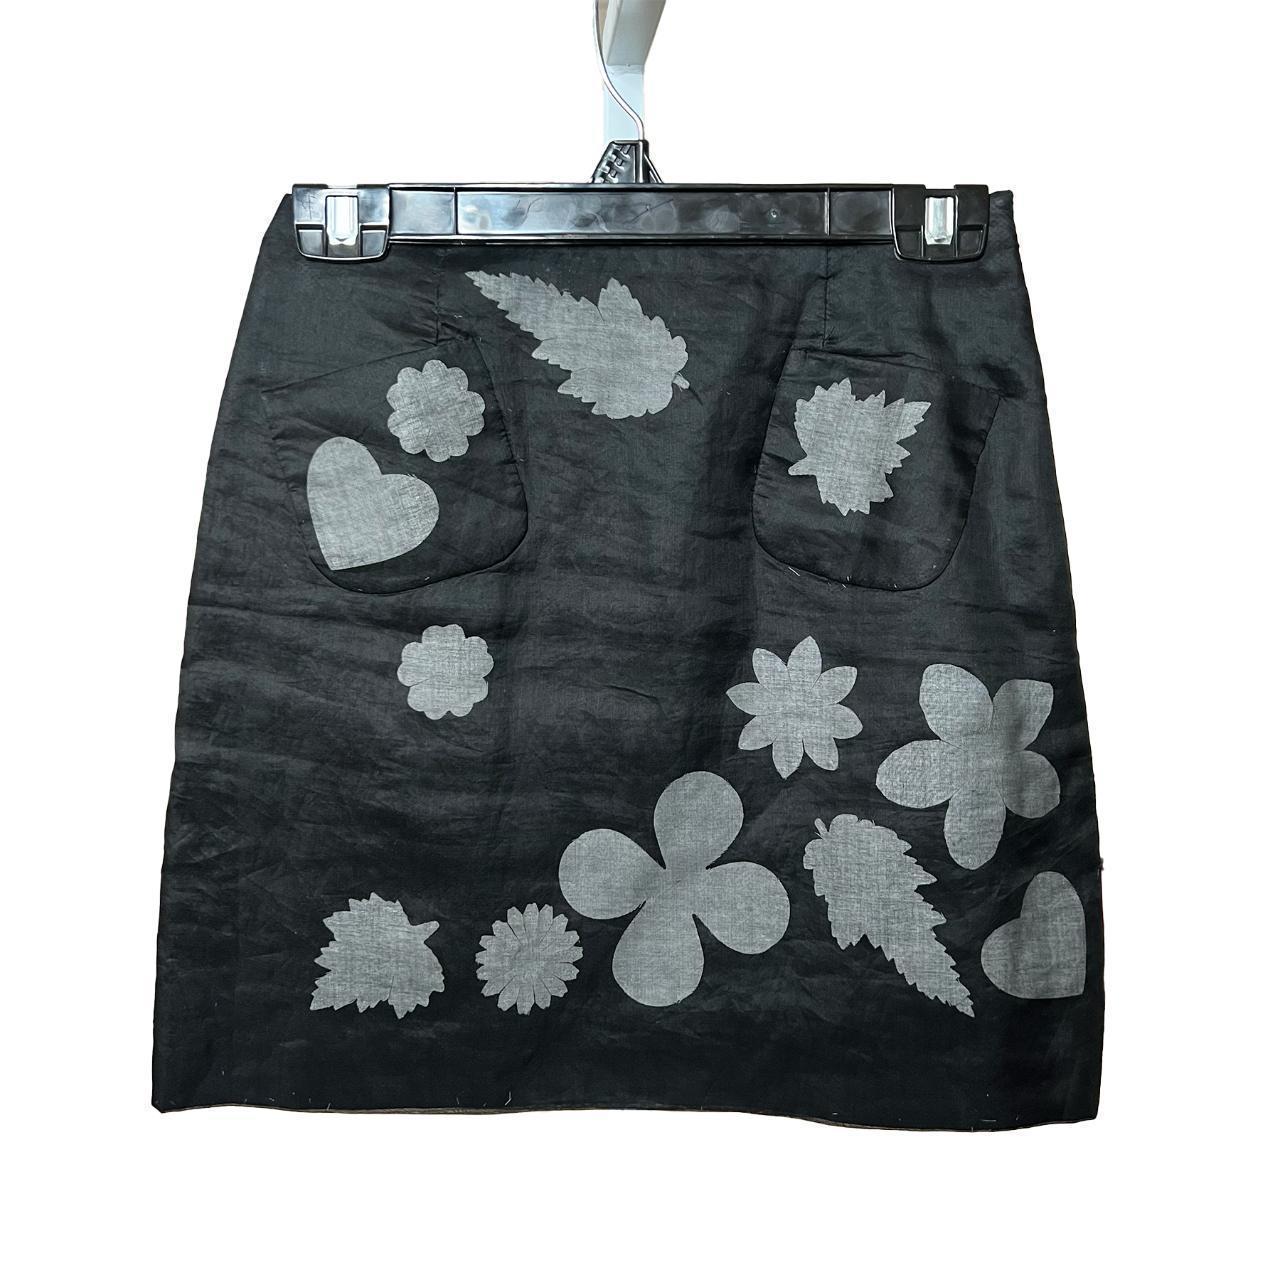 Moschino Cheap & Chic Women's Grey and Black Skirt